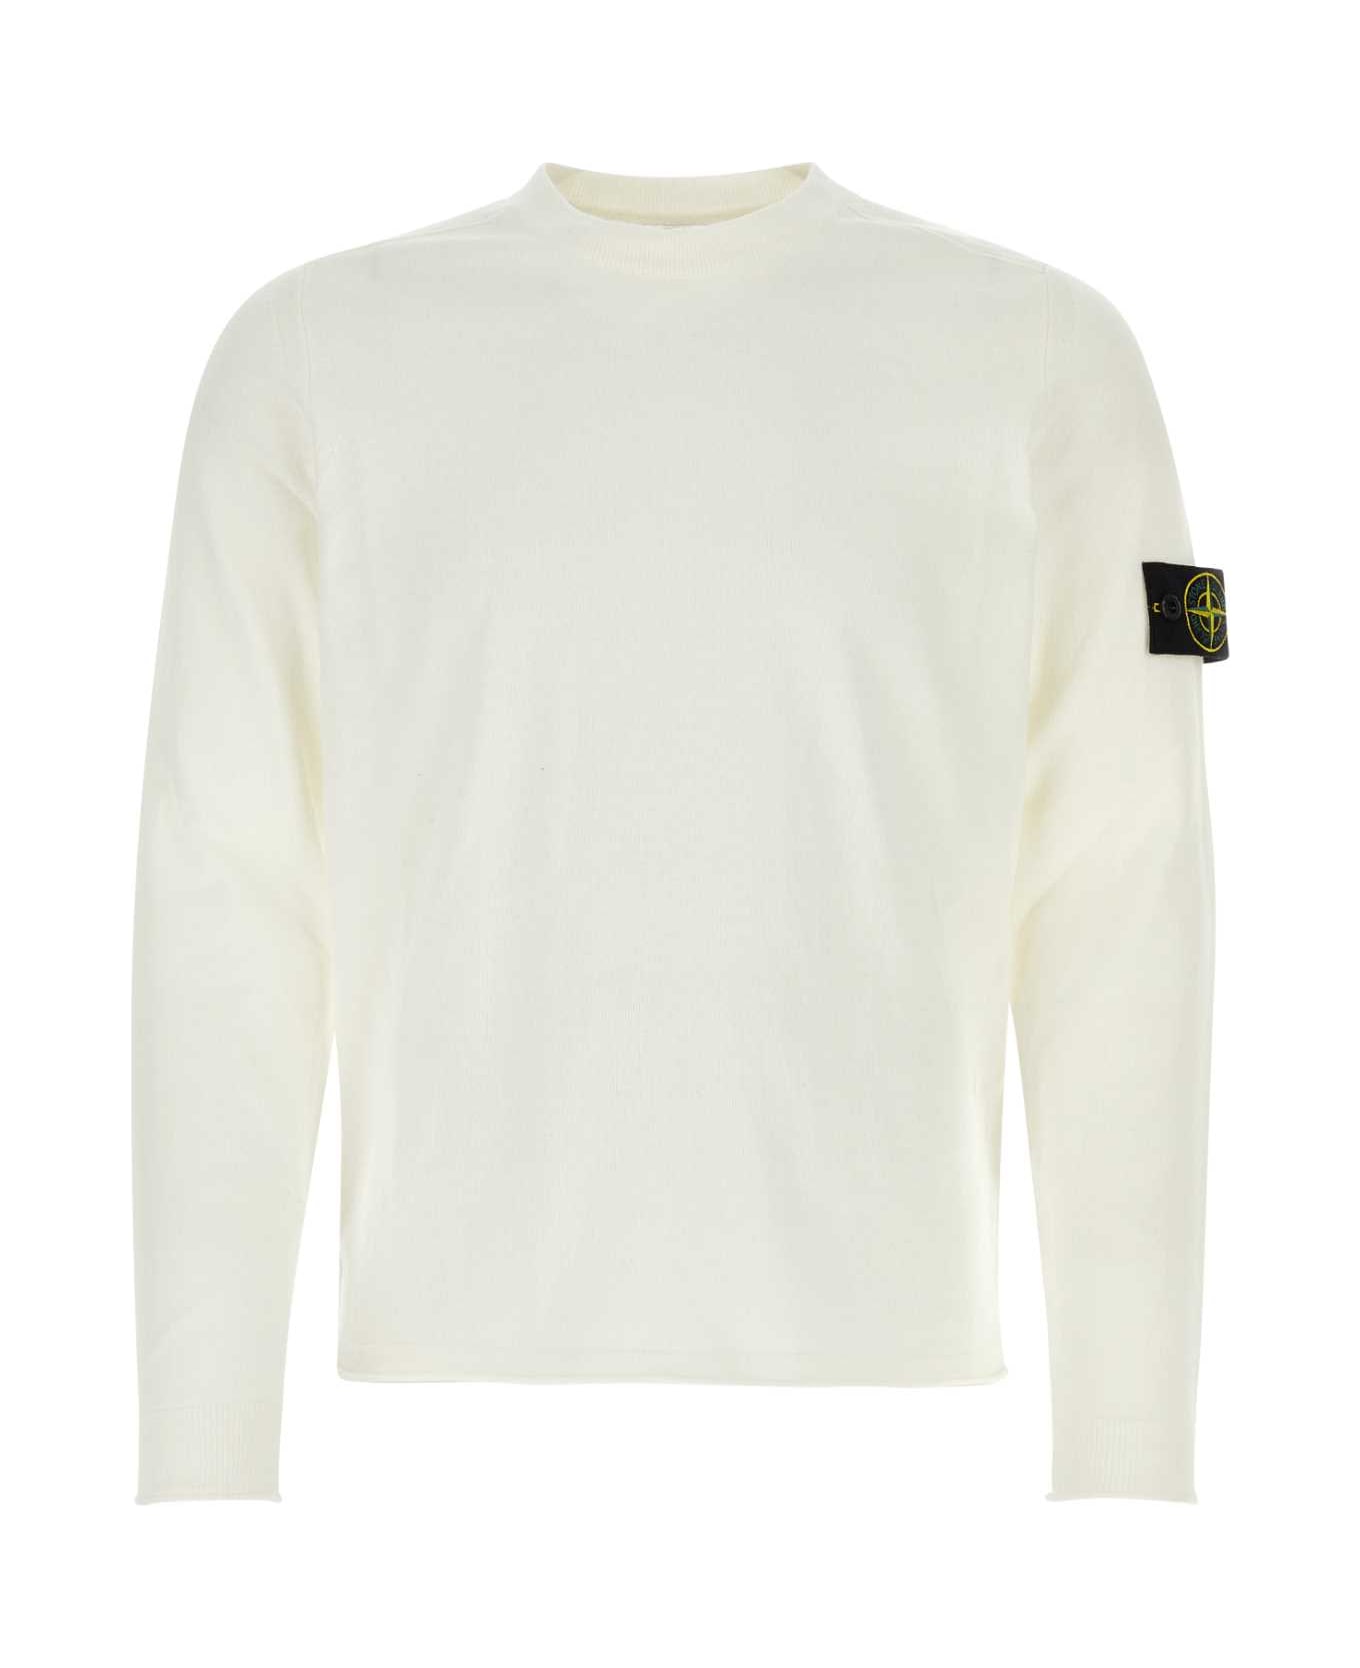 Stone Island White Cotton Sweater - WHT